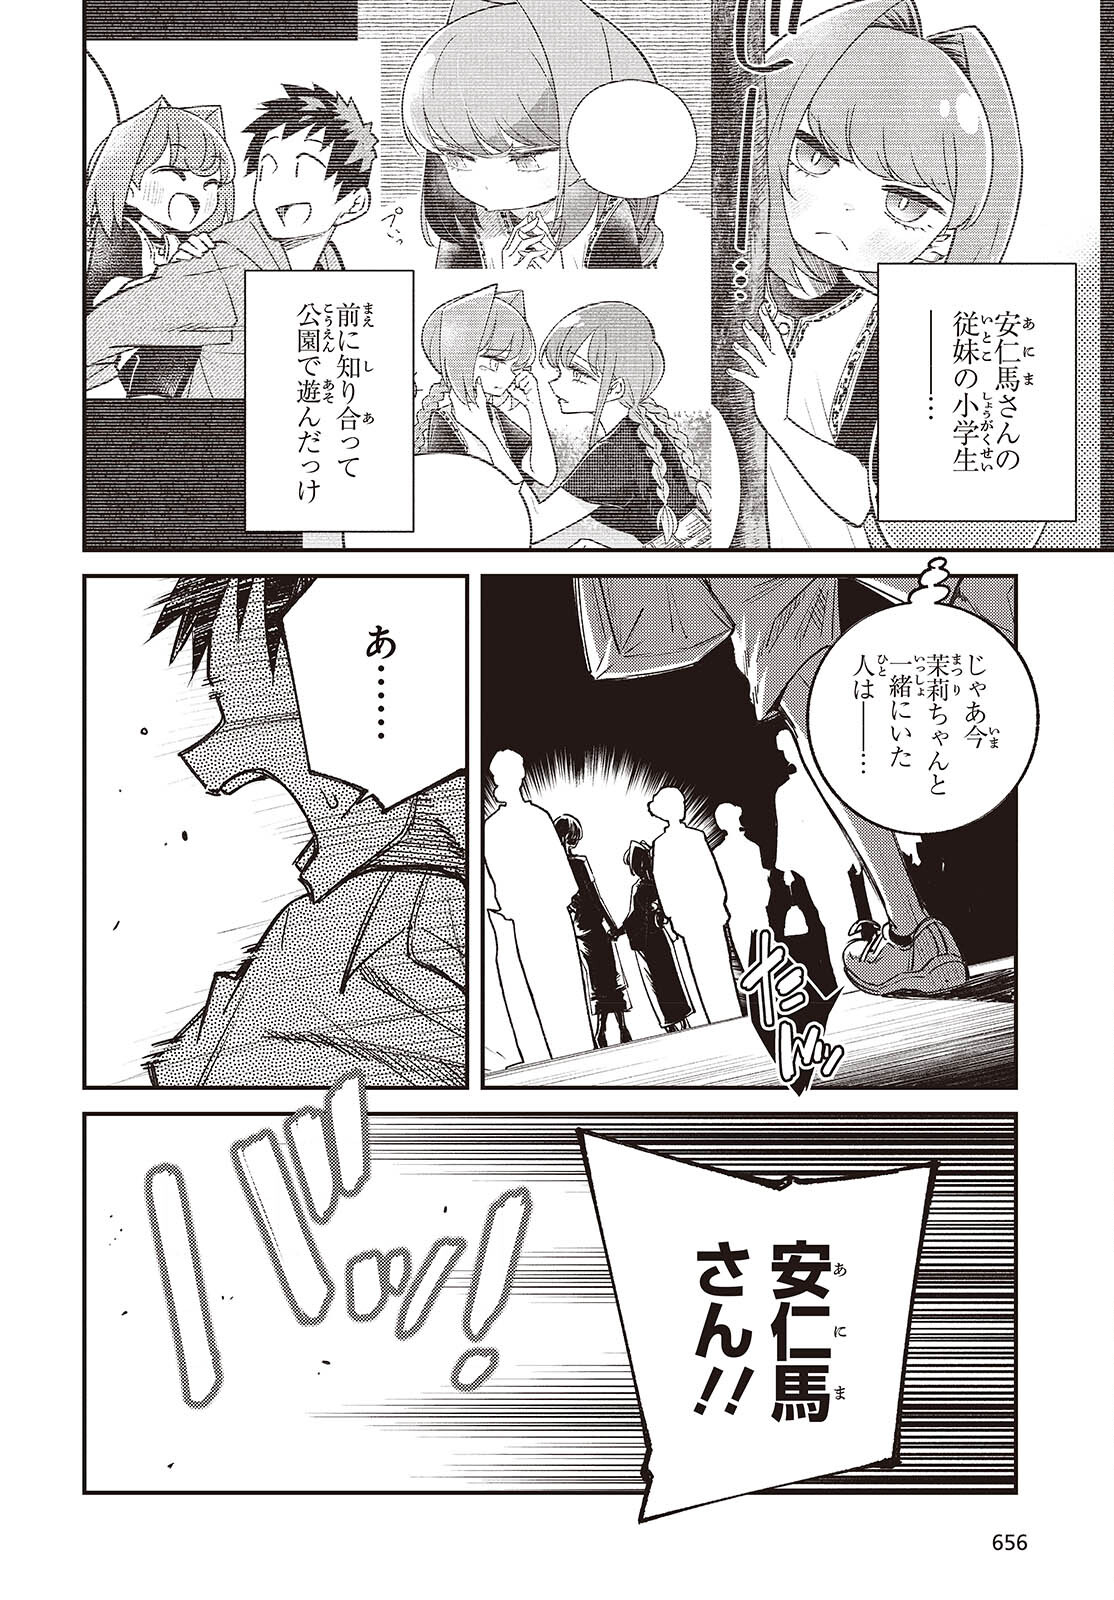 Ikimono-suki no Anima-san ni wa Honno Choppiri Doku ga aru - Chapter 10 - Page 6